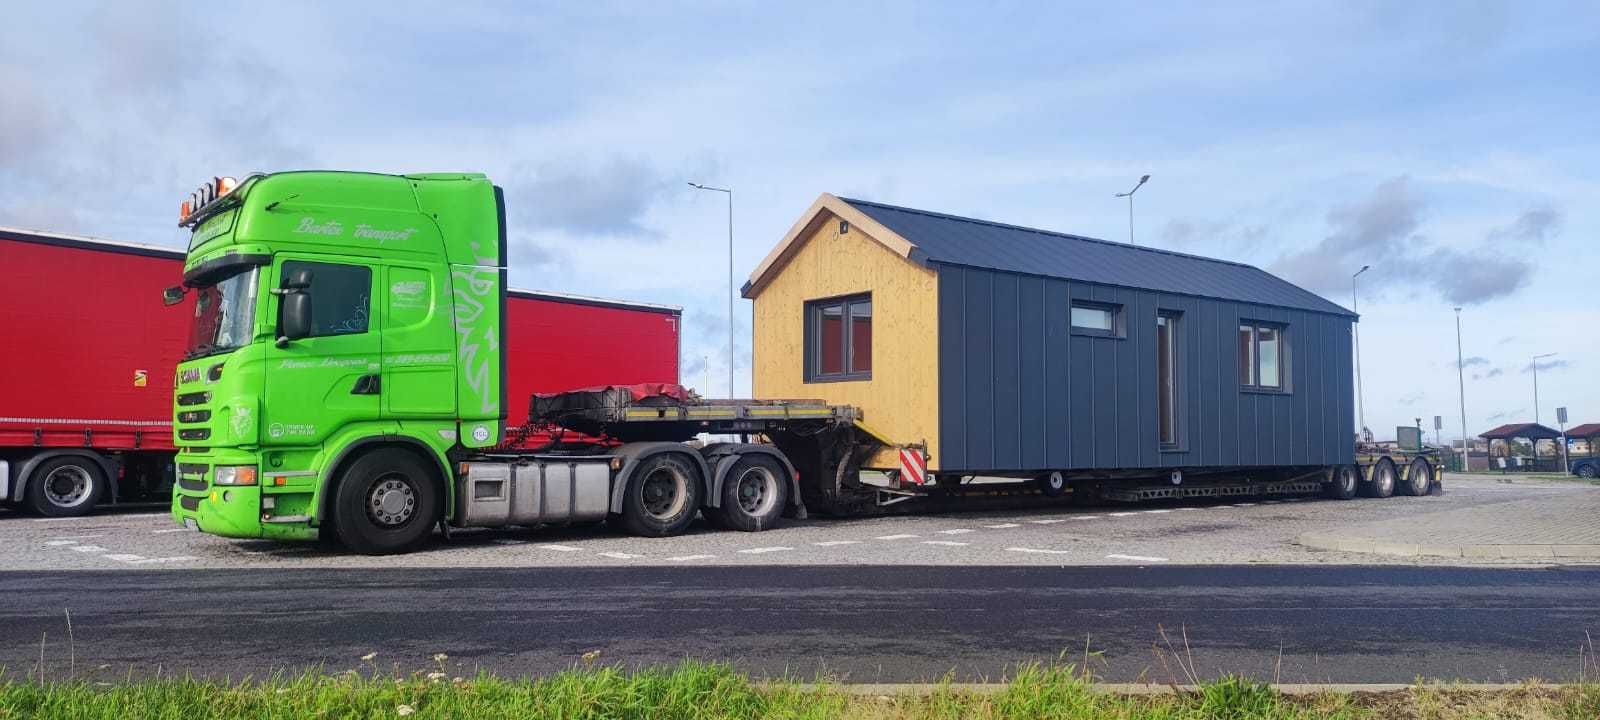 Transport domków holenderskich, domków mobilnych,modulowych, kempingów